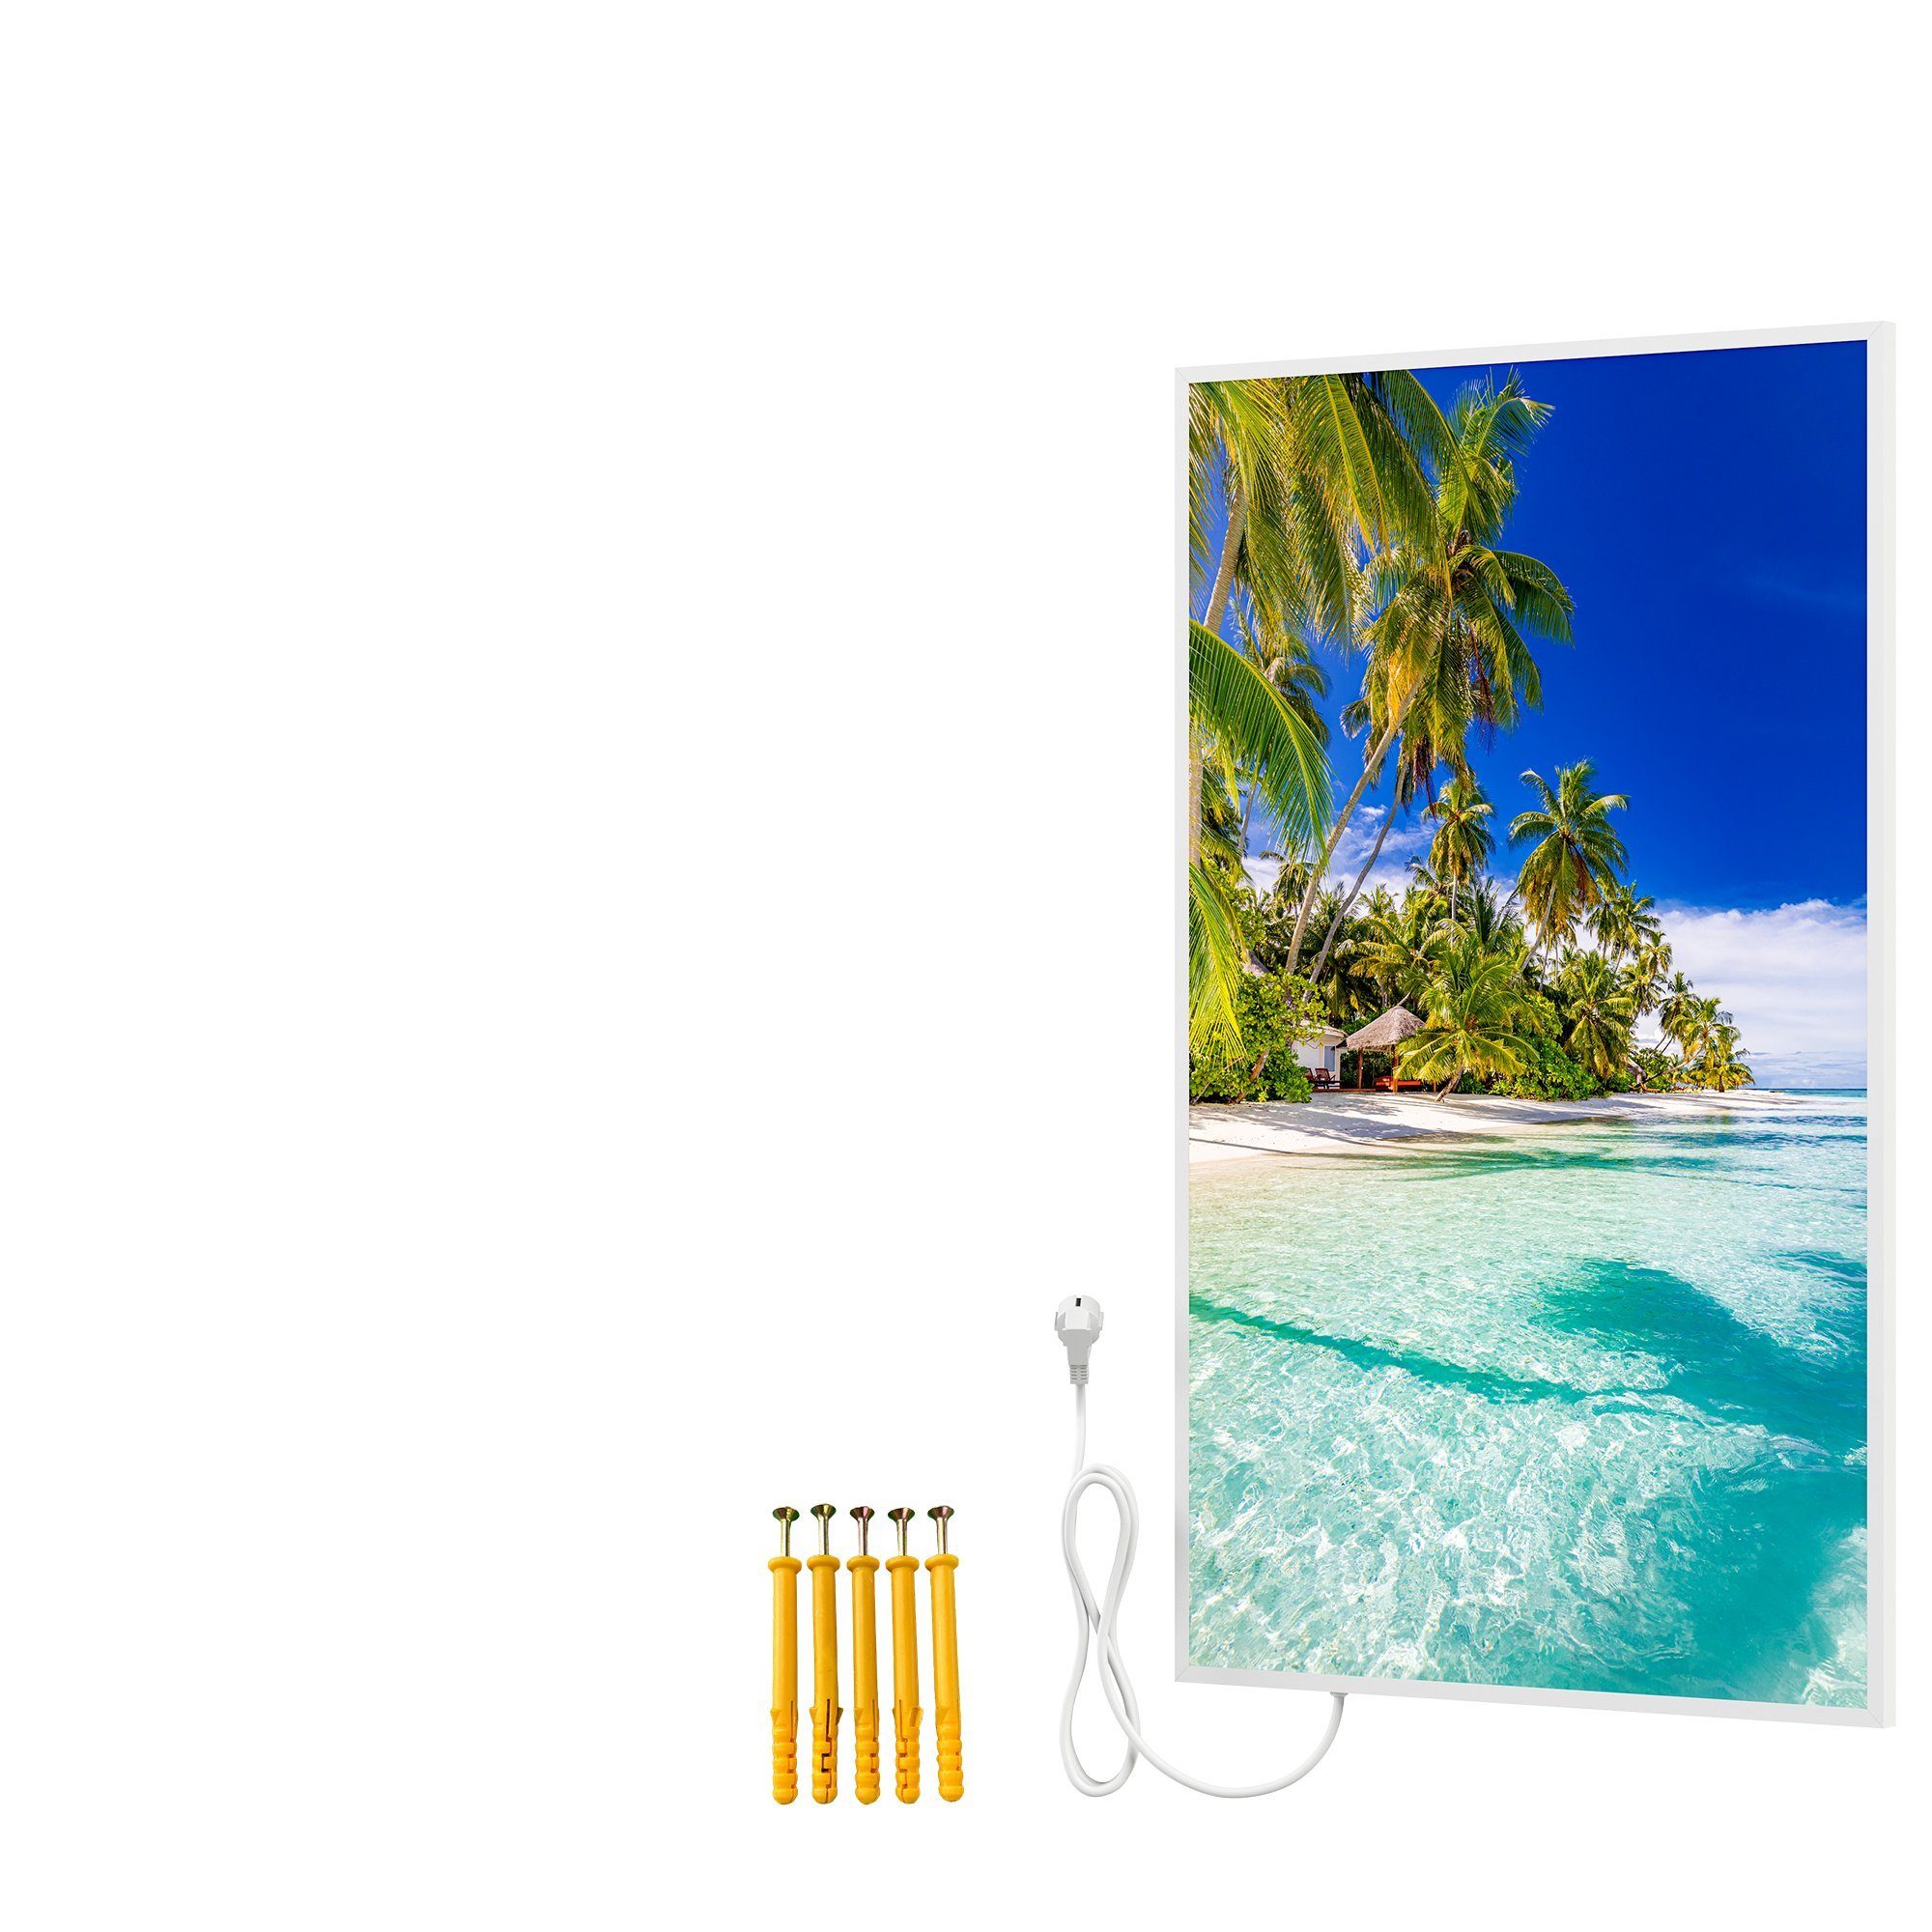 Bringer Infrarotheizung Bildheizung, Bild Infrarotheizung mit Rahmen, Motiv: Palmenstrand, Malediven